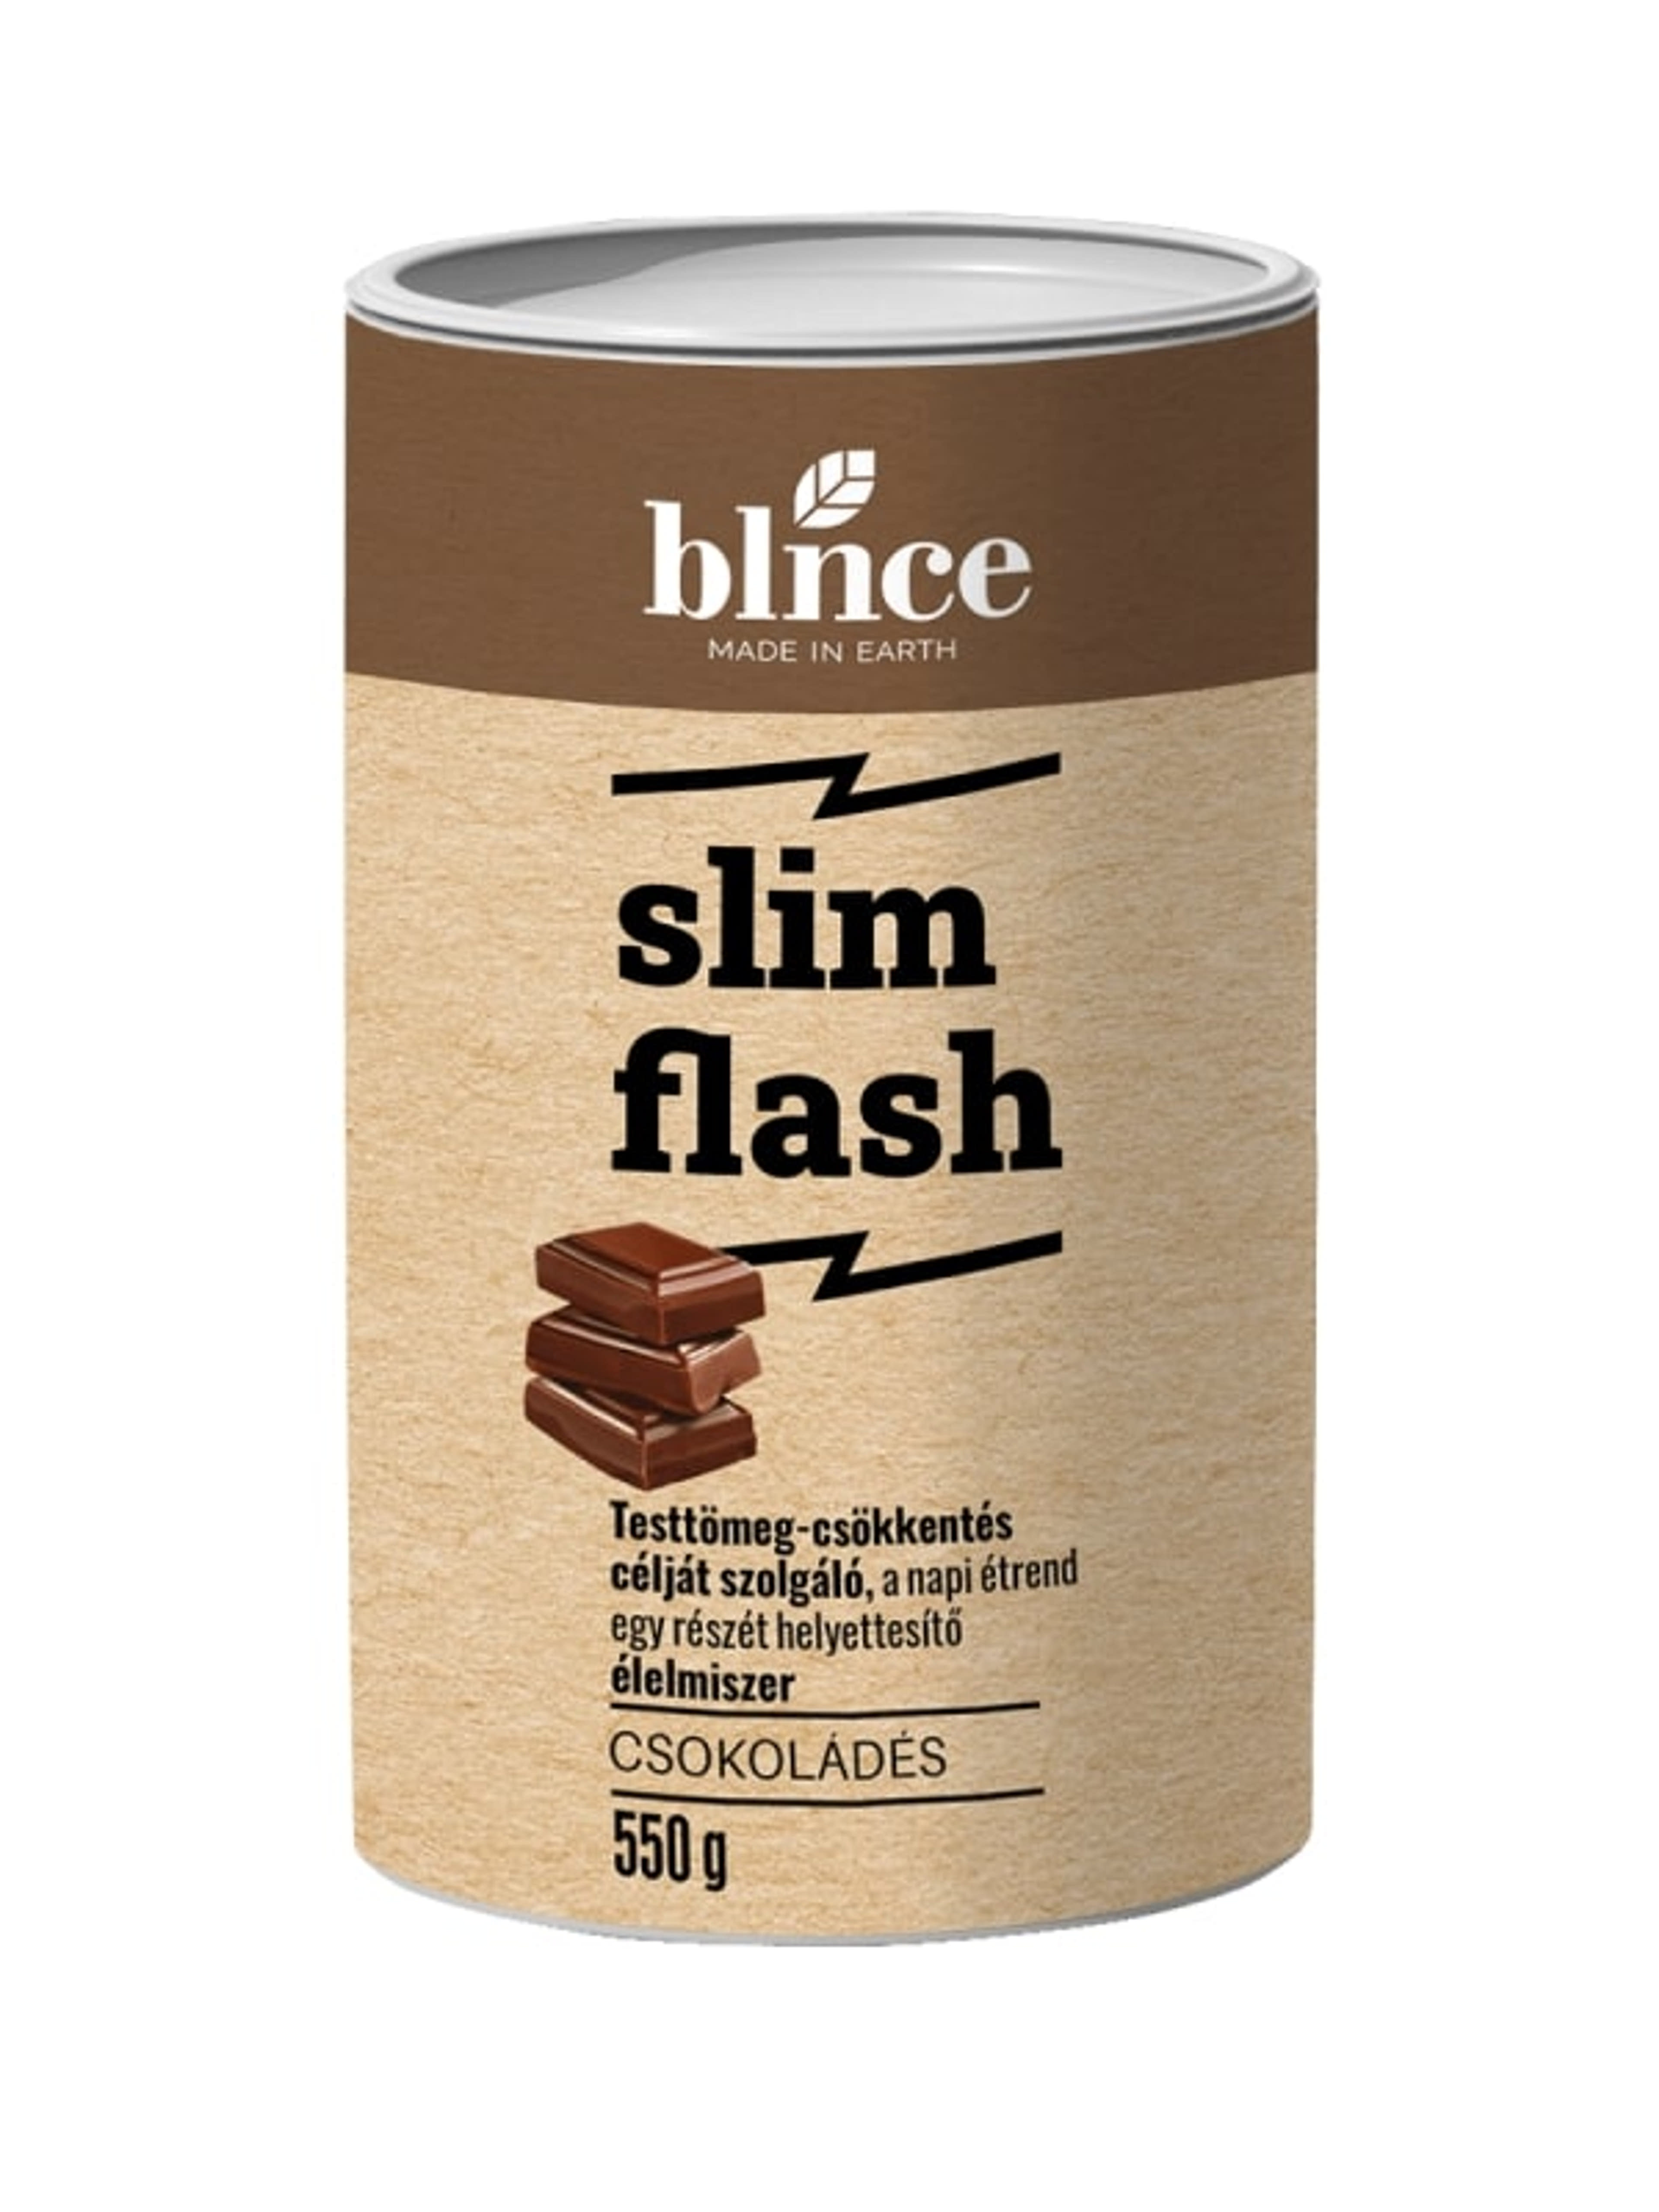 Blnce Active Slim Flash fogyókúrás italpor, csokis - 550 g